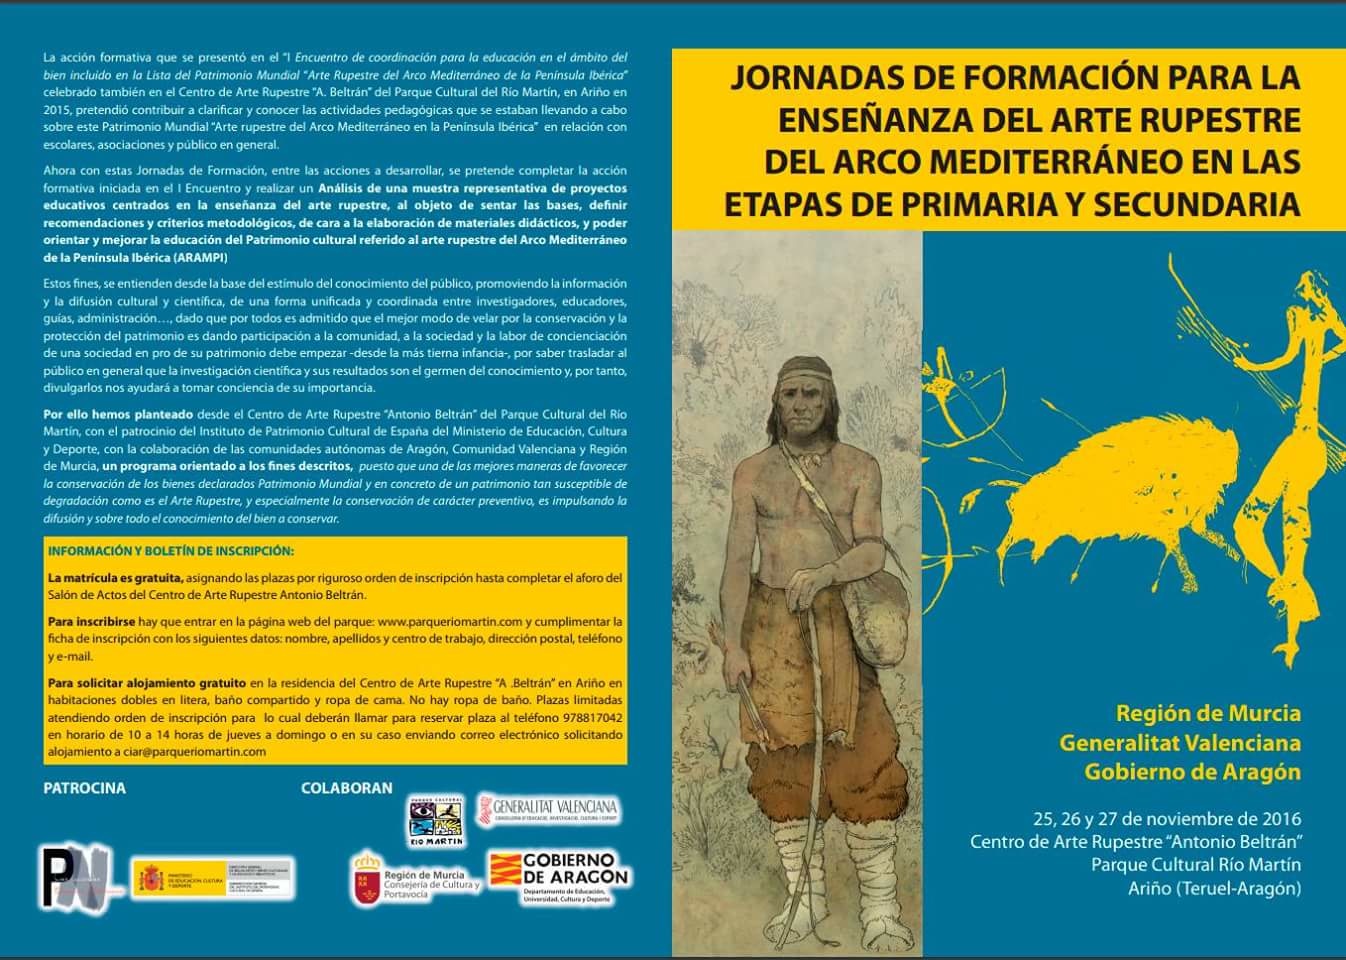 Cartel de las Jornadas de Formación para la Enseñanza del Arte Rupestre del Arco Mediterráneo en Primaria y Secundaria